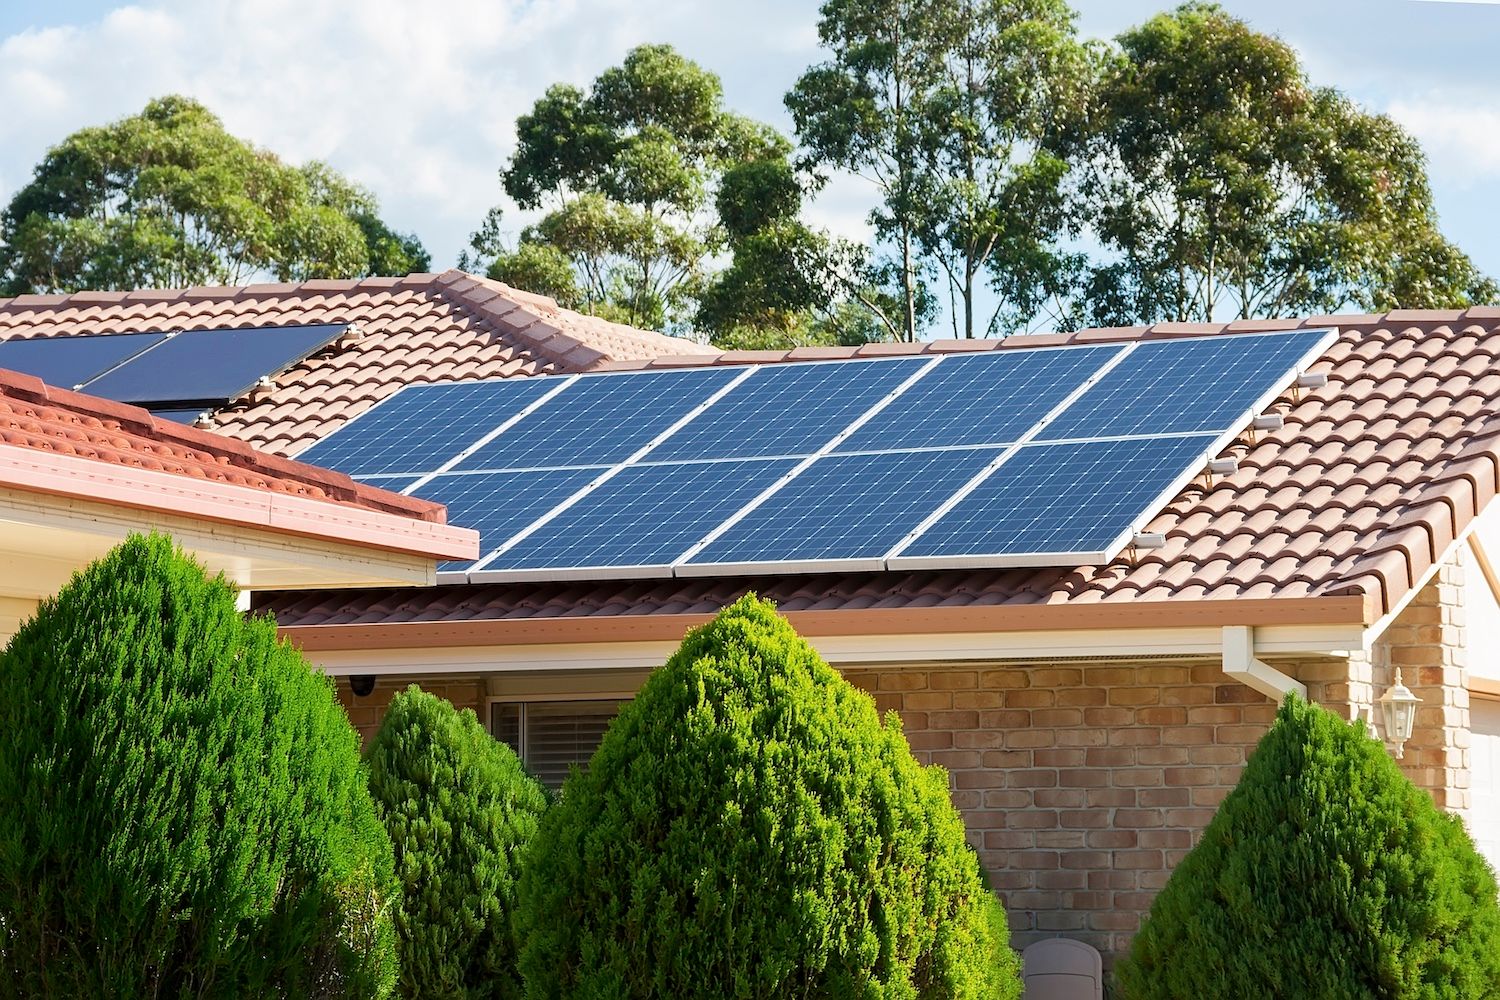 Kliento Atsiliepimas: Nuosavos saulės elektrinės projekto praplėtimas